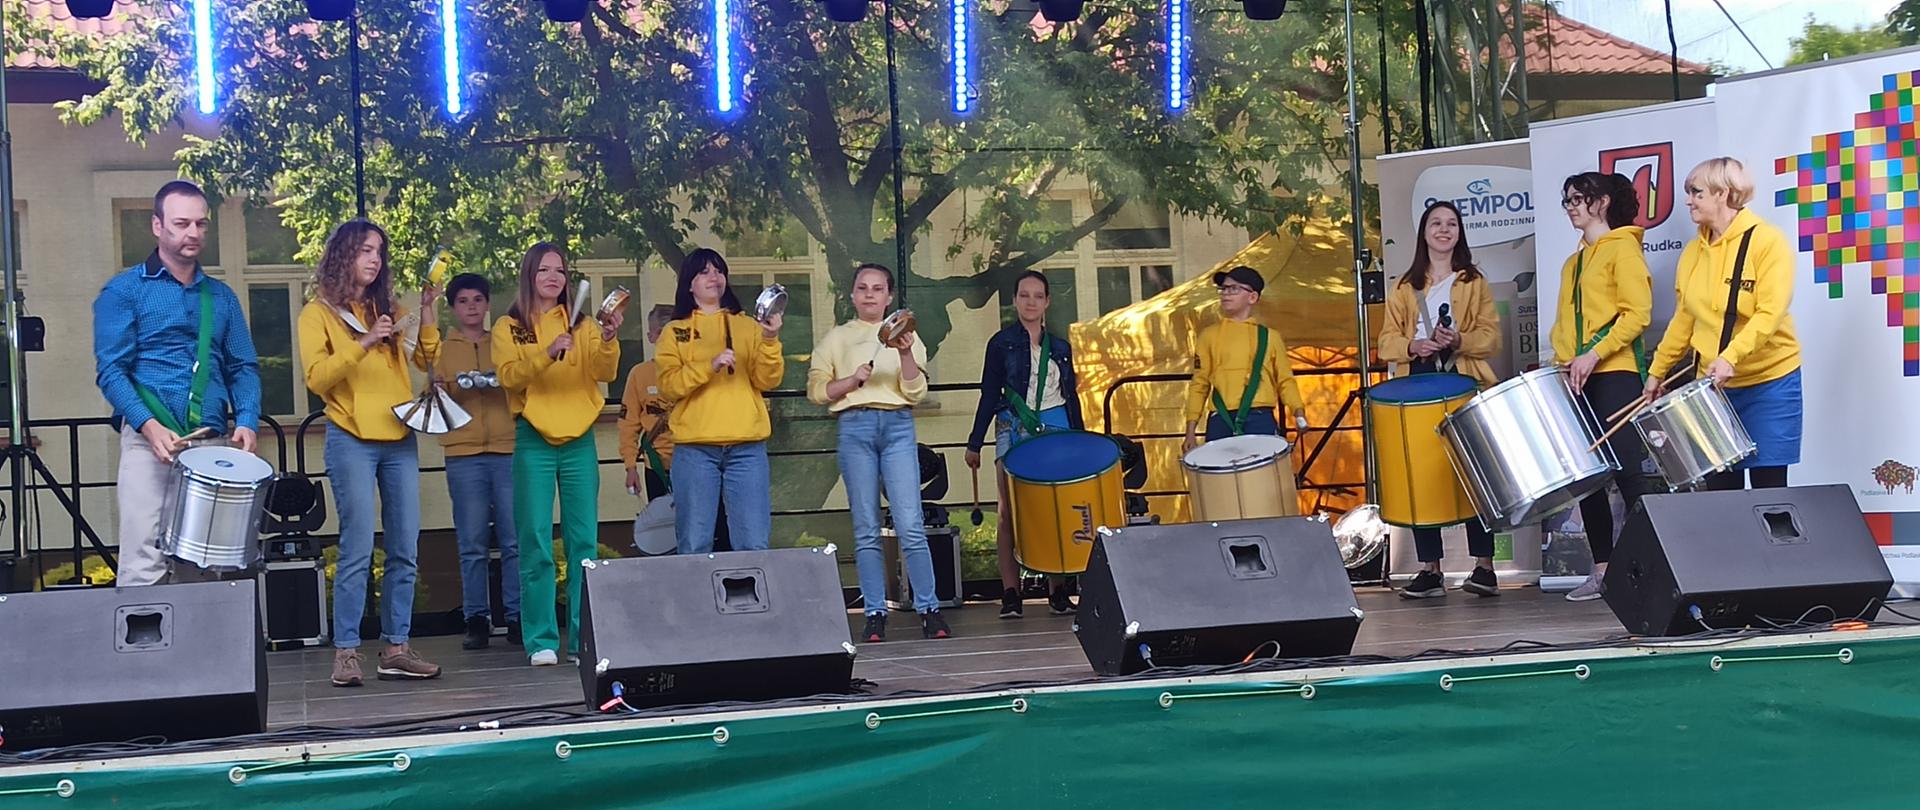 Uczniowie w żółtych bluzach stoją na scenie z różnymi instrumentami perkusyjnymi na których grają. Prowadzący Batucadę w niebieskiej koszuli z bębnem zawieszonym na pasie przez ramię, stoi po lewej stronie.